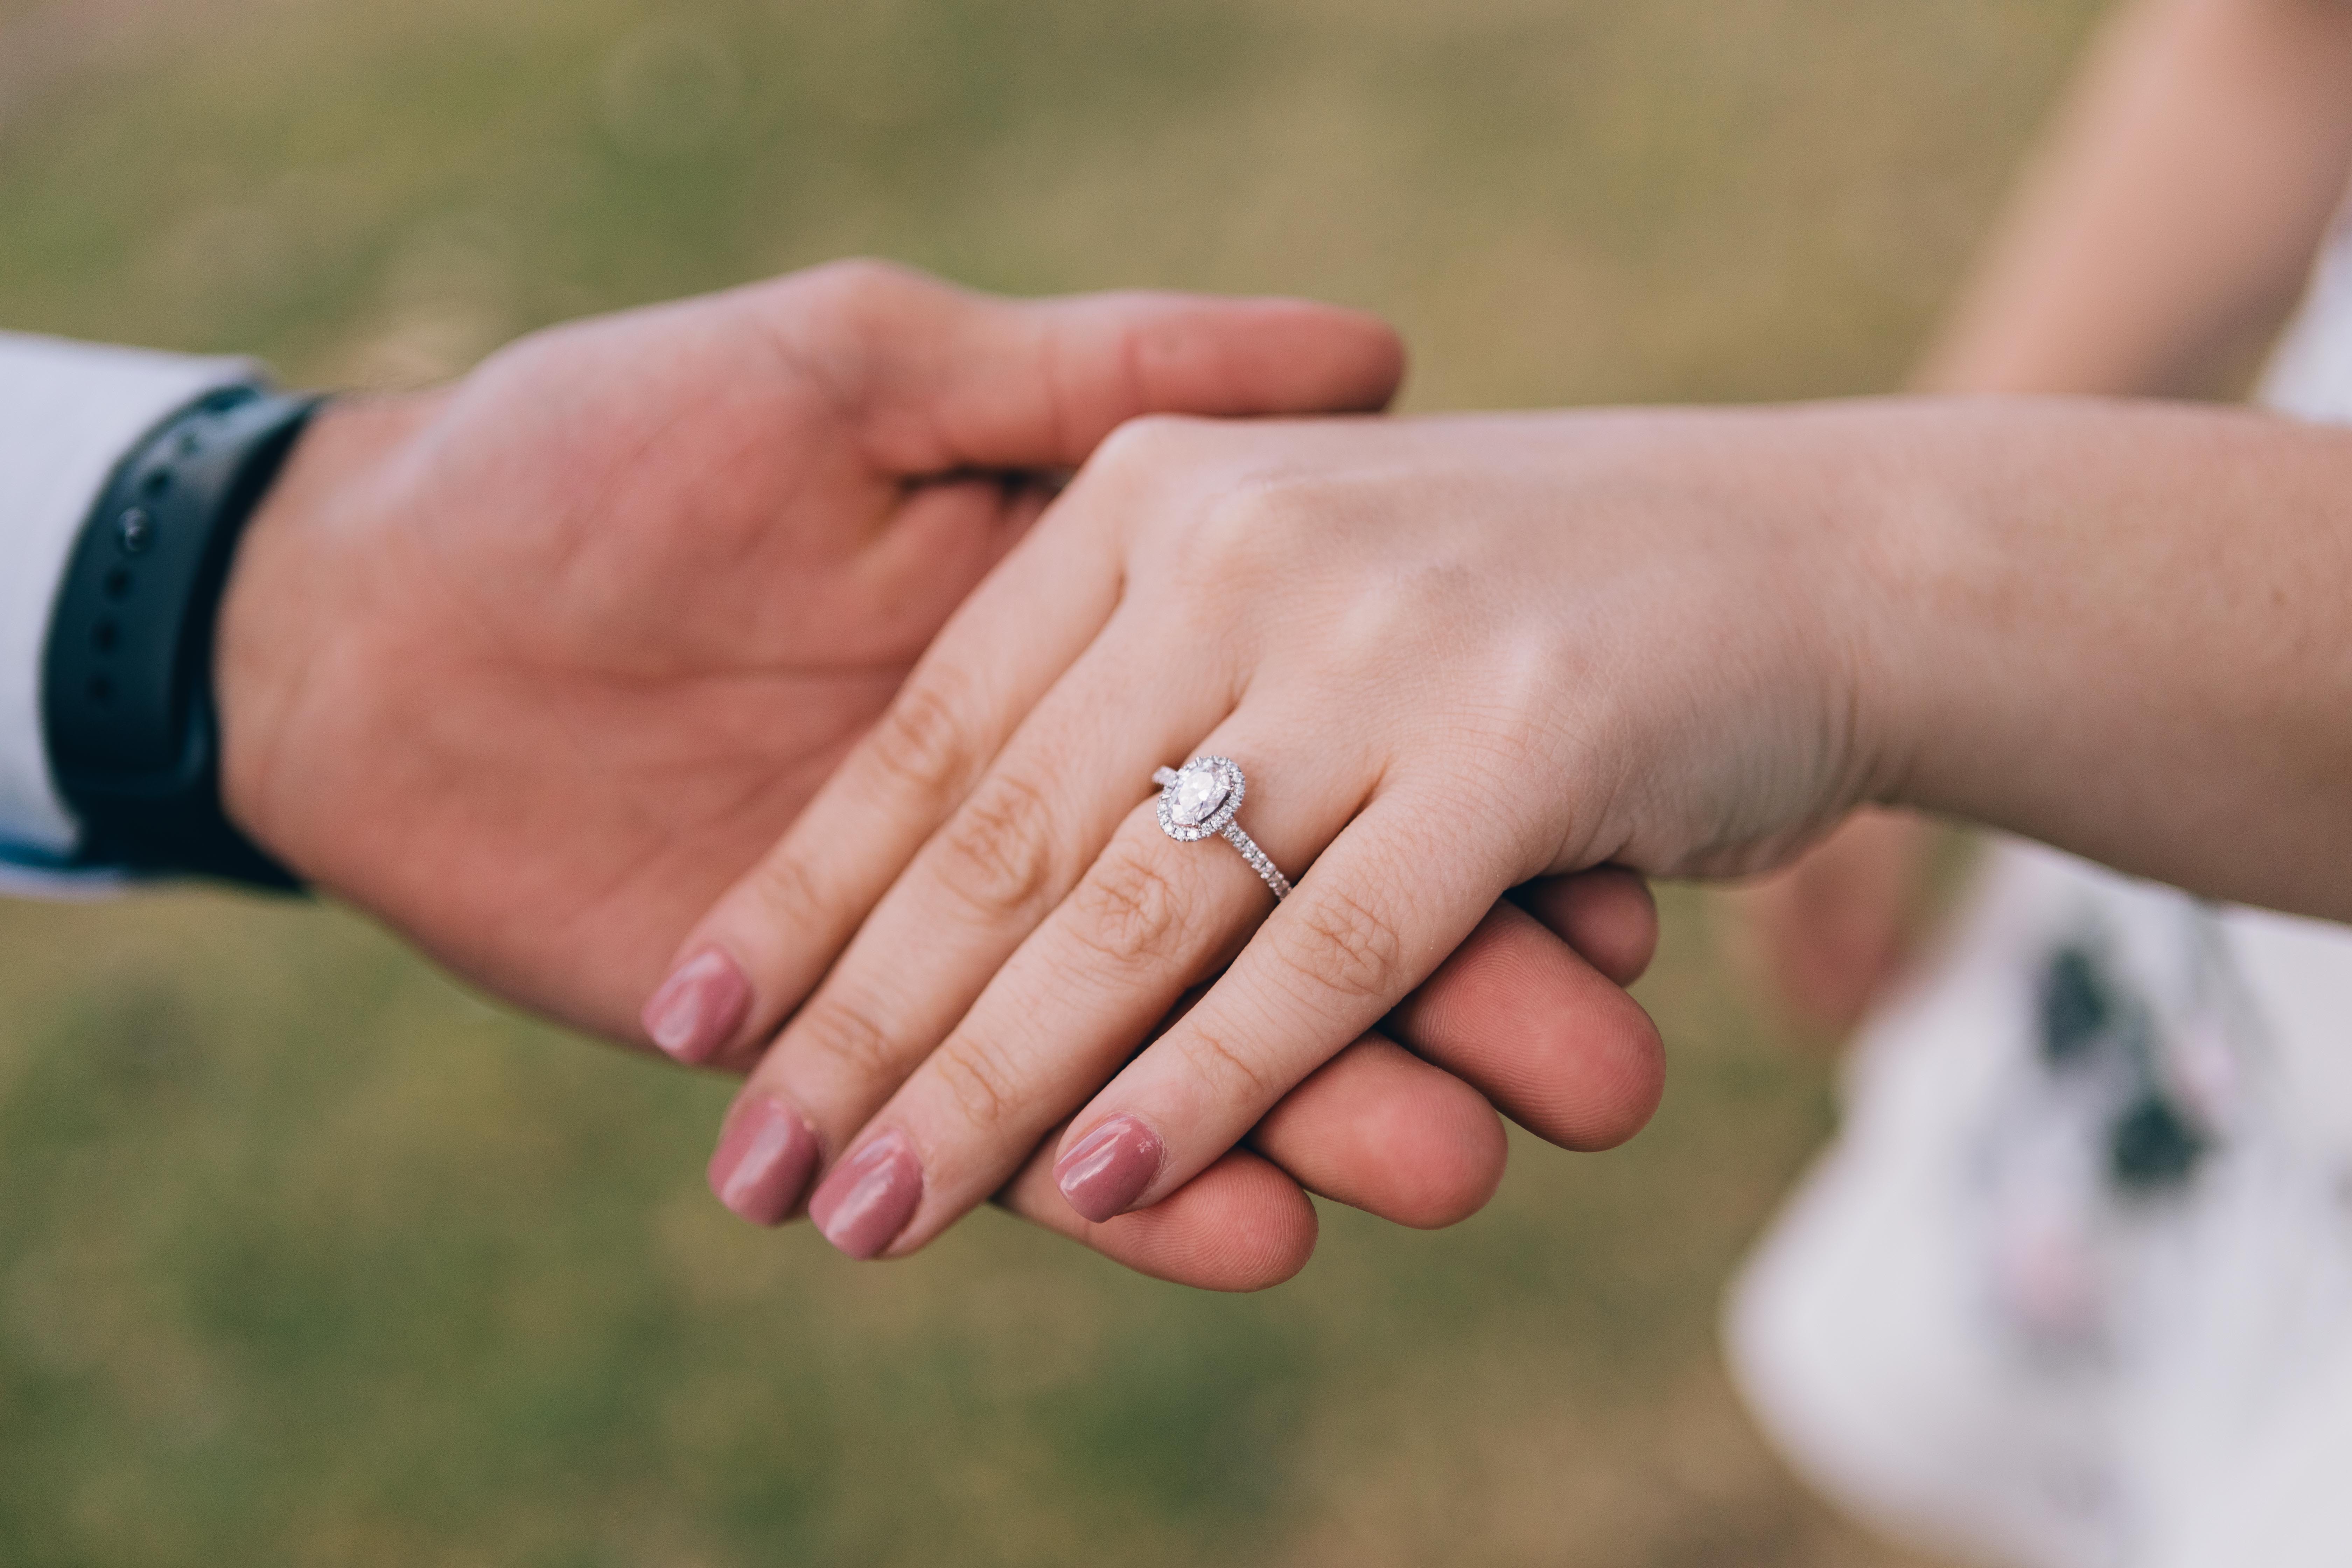 Jessica s'est fiancée à l'homme de ses rêves, et ils ont immédiatement commencé à planifier leur mariage de conte de fées. | Source : Pexels